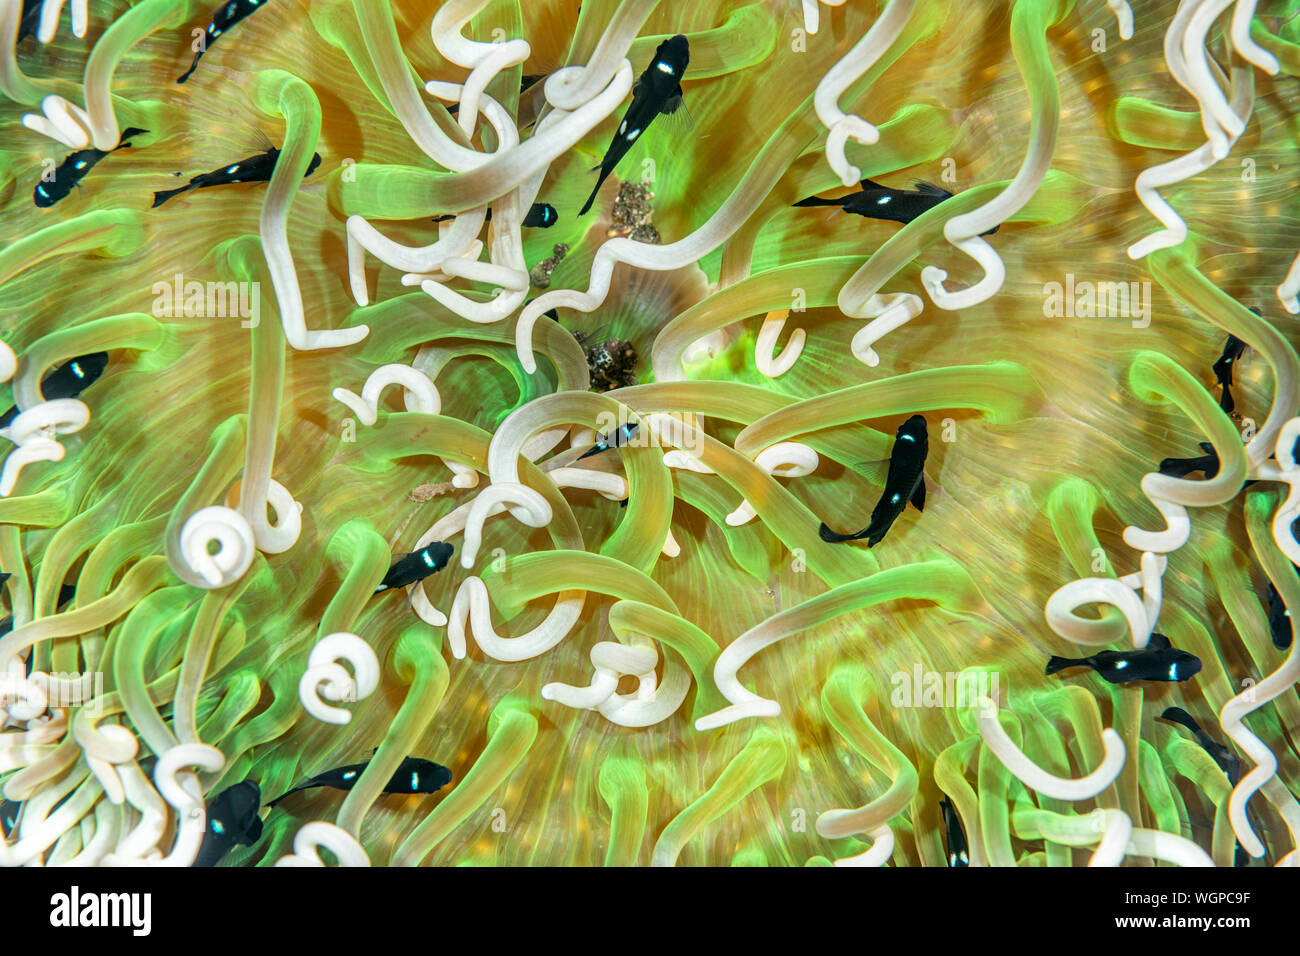 Domino piccoli pesci nuotano entro i tentacoli di una protezione anemone marittimo. Foto Stock